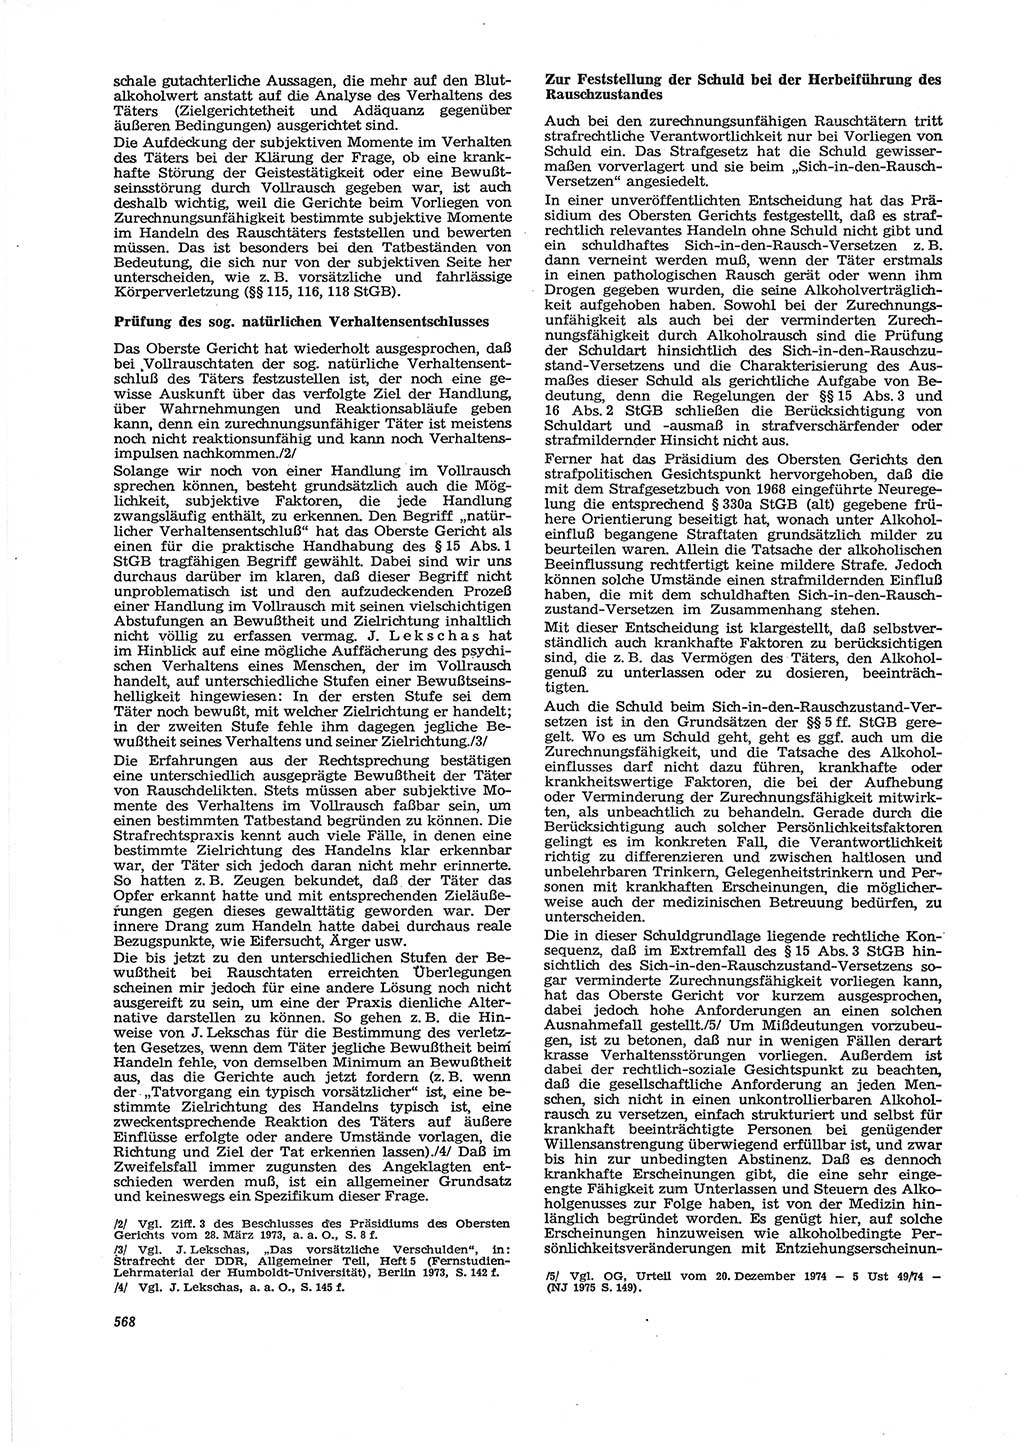 Neue Justiz (NJ), Zeitschrift für Recht und Rechtswissenschaft [Deutsche Demokratische Republik (DDR)], 29. Jahrgang 1975, Seite 568 (NJ DDR 1975, S. 568)